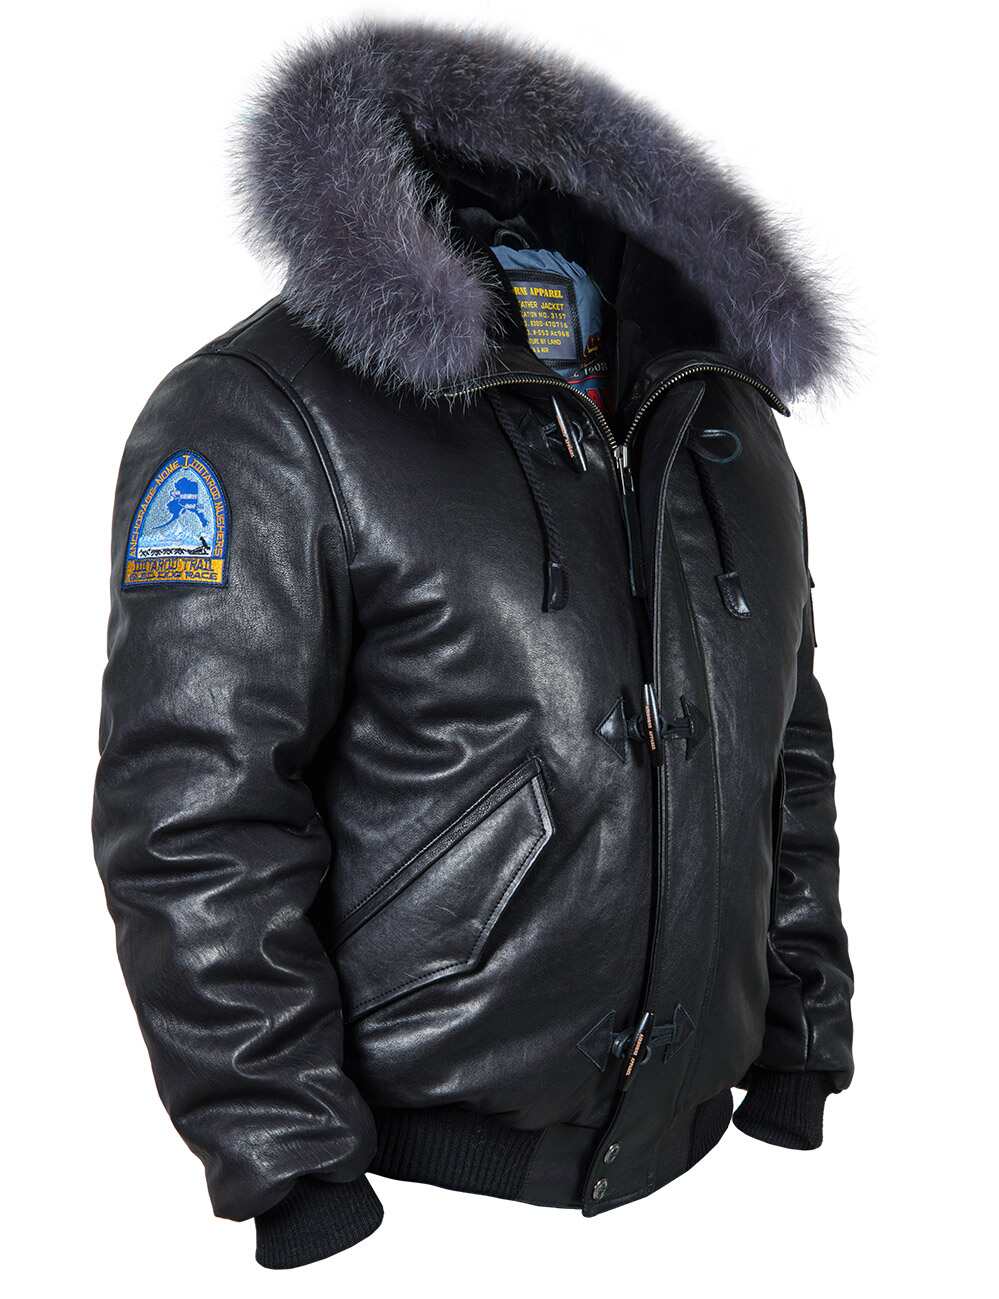 Men's Leather Winter Jackets | Vintage Leder online store